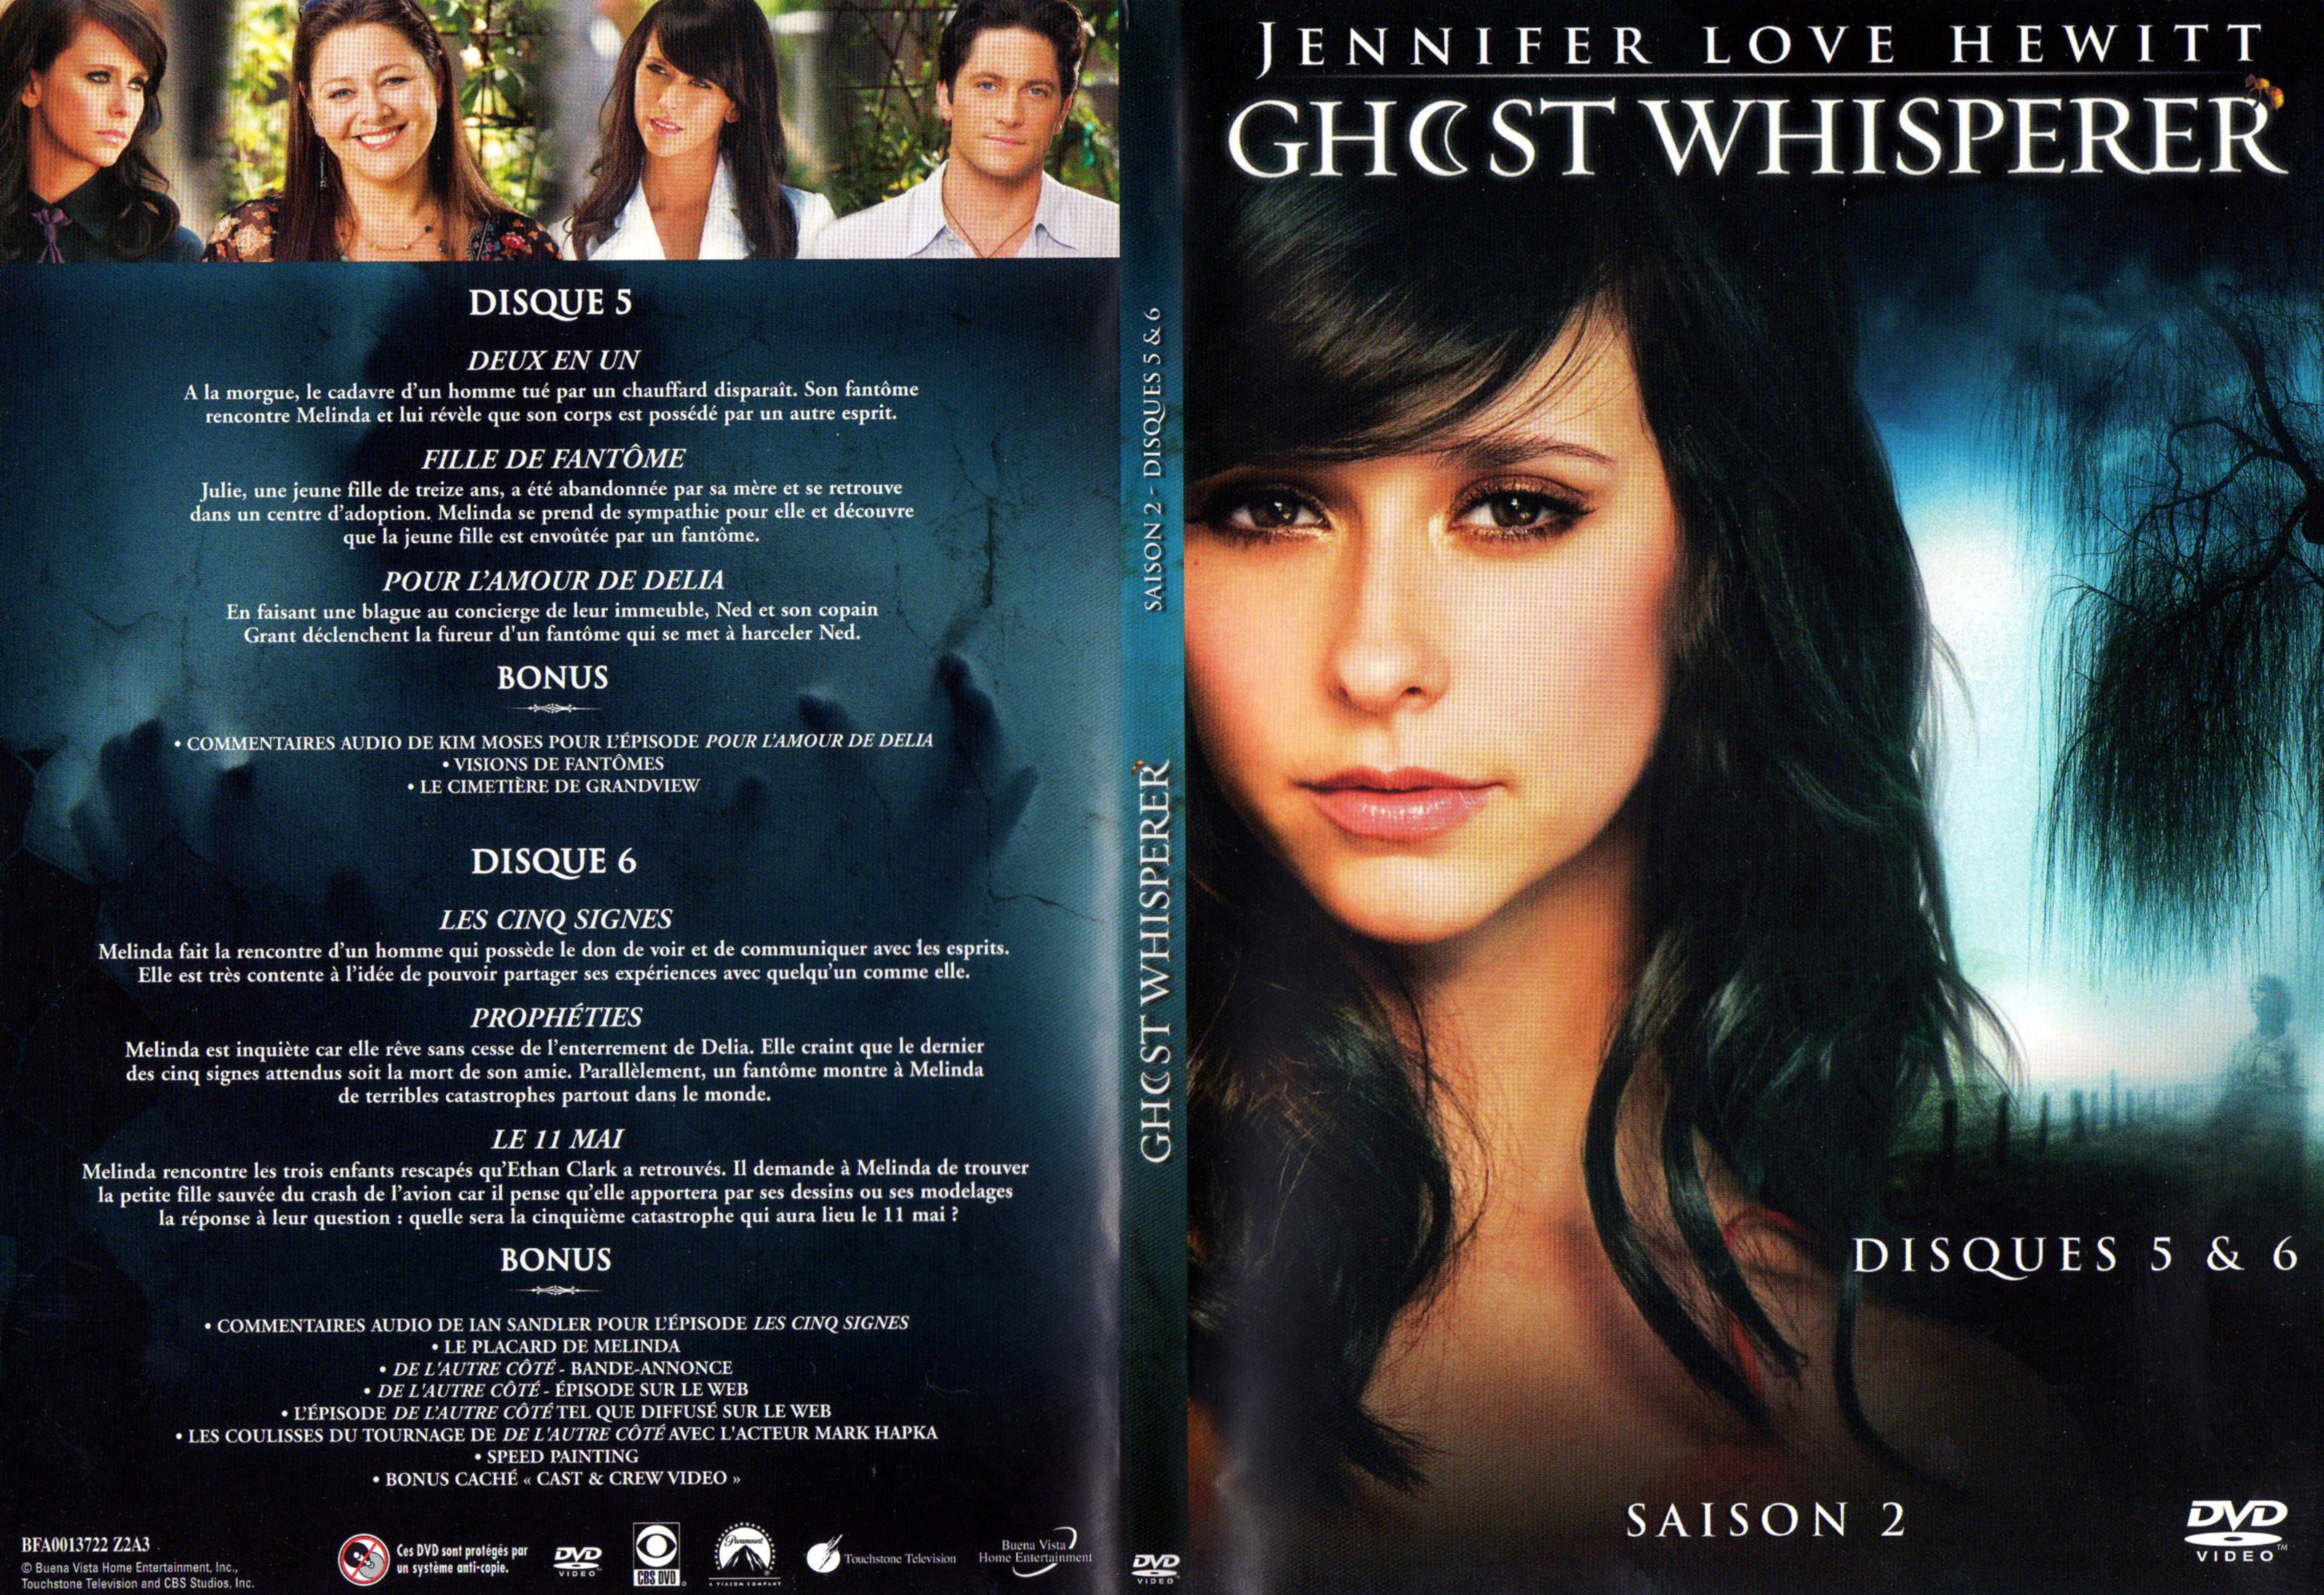 Jaquette DVD Ghost whisperer Saison 2 DVD 3